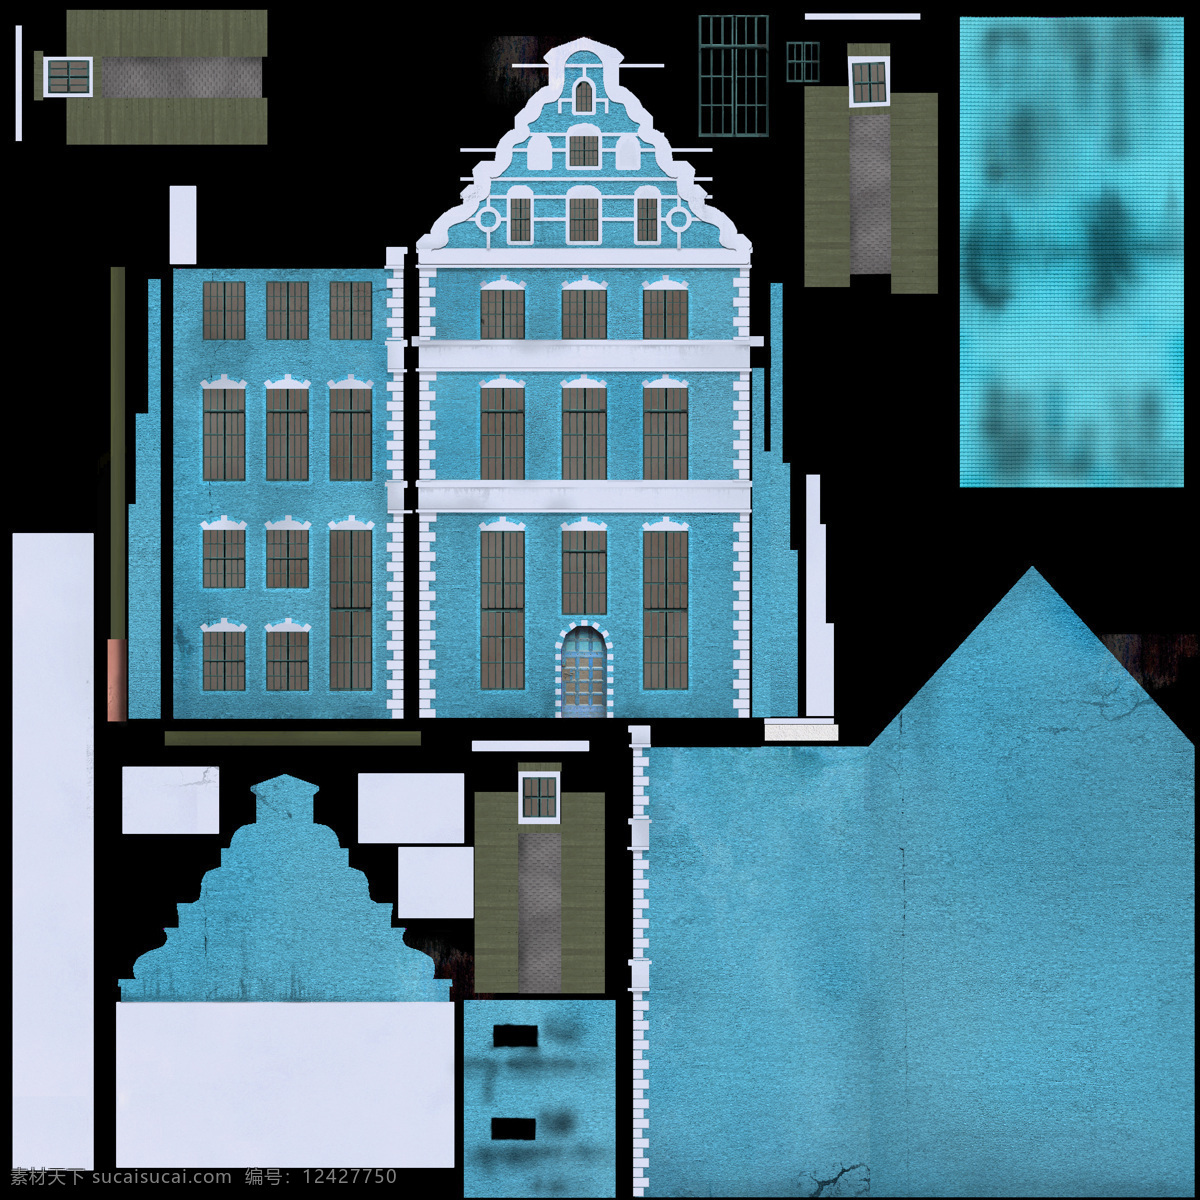 现代 欧式 建筑 场景 模型 矢量图 楼房 max